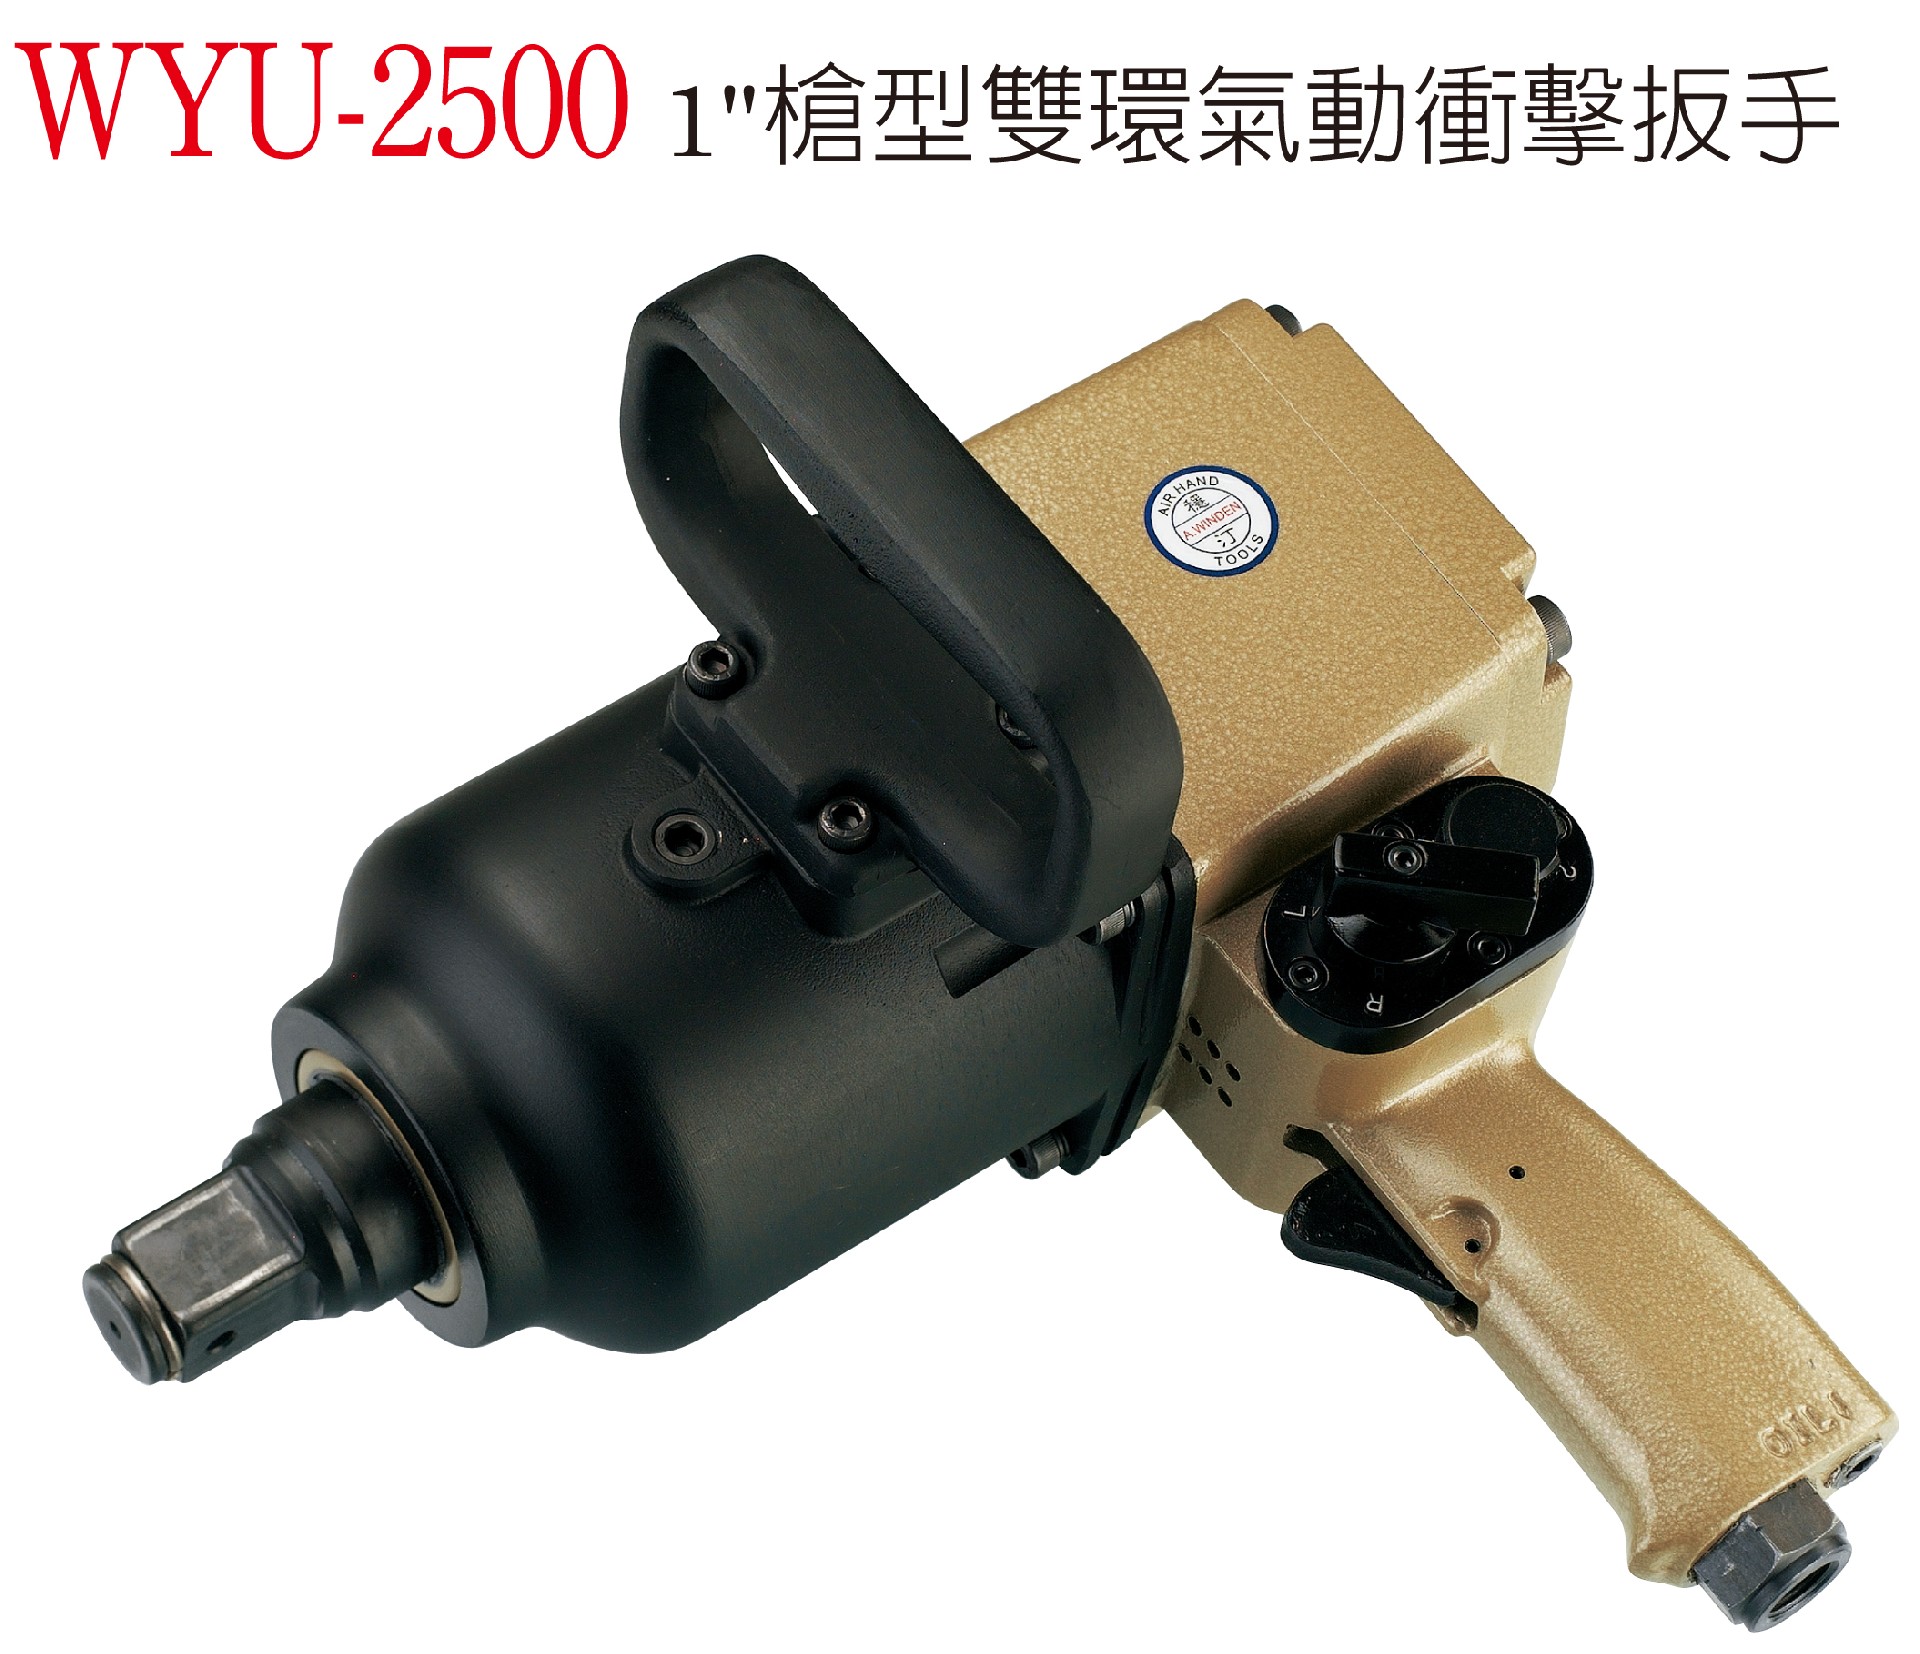 WYU-2500 槍型雙環氣動衝擊扳手.jpg